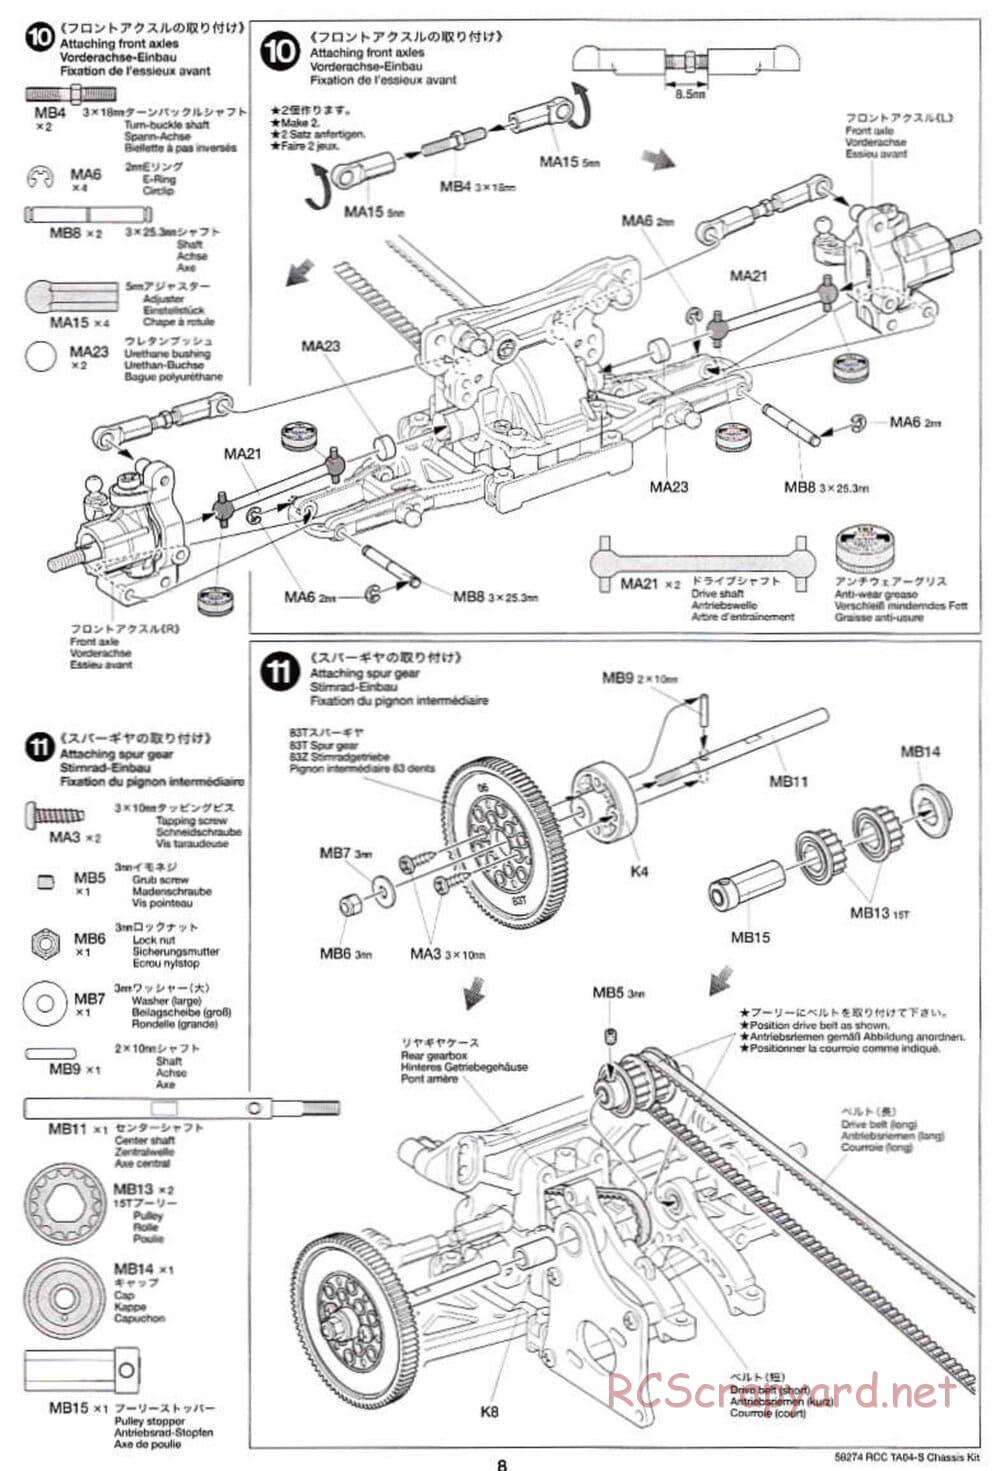 Tamiya - TA-04S Chassis - Manual - Page 8